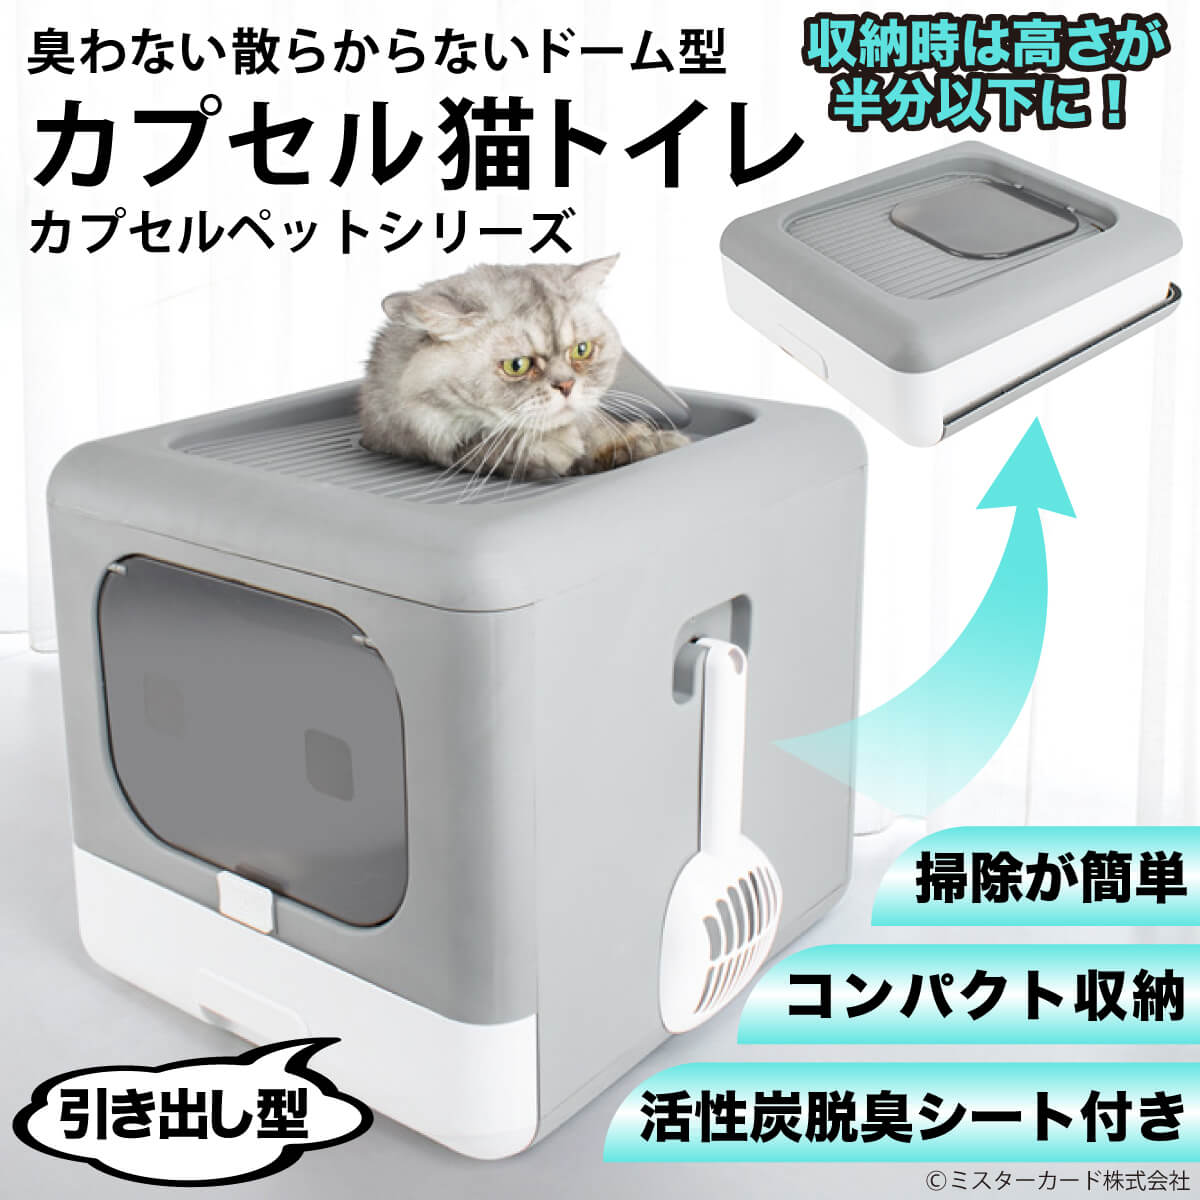 ドーム型「カプセル猫トイレ」 miraiON